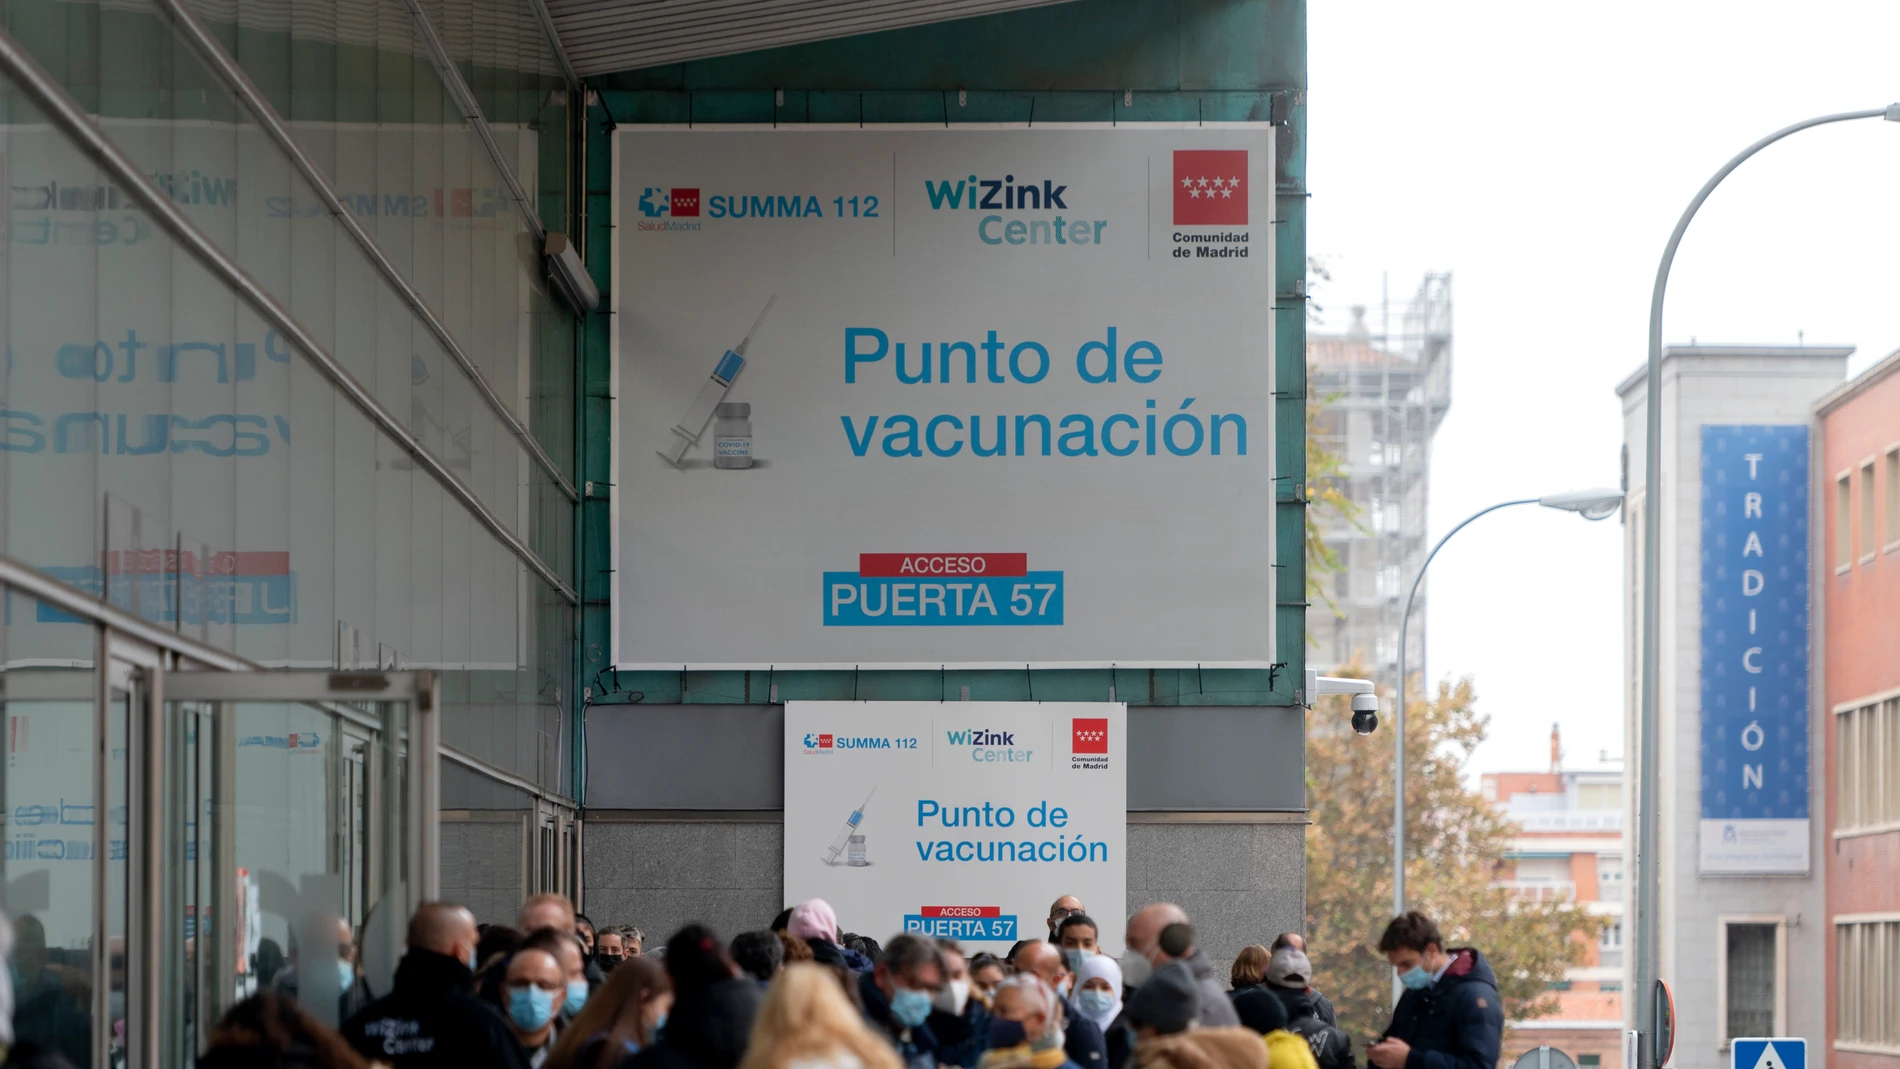 Varias personas hacen cola para vacunarse en el Wizink Center de Madrid